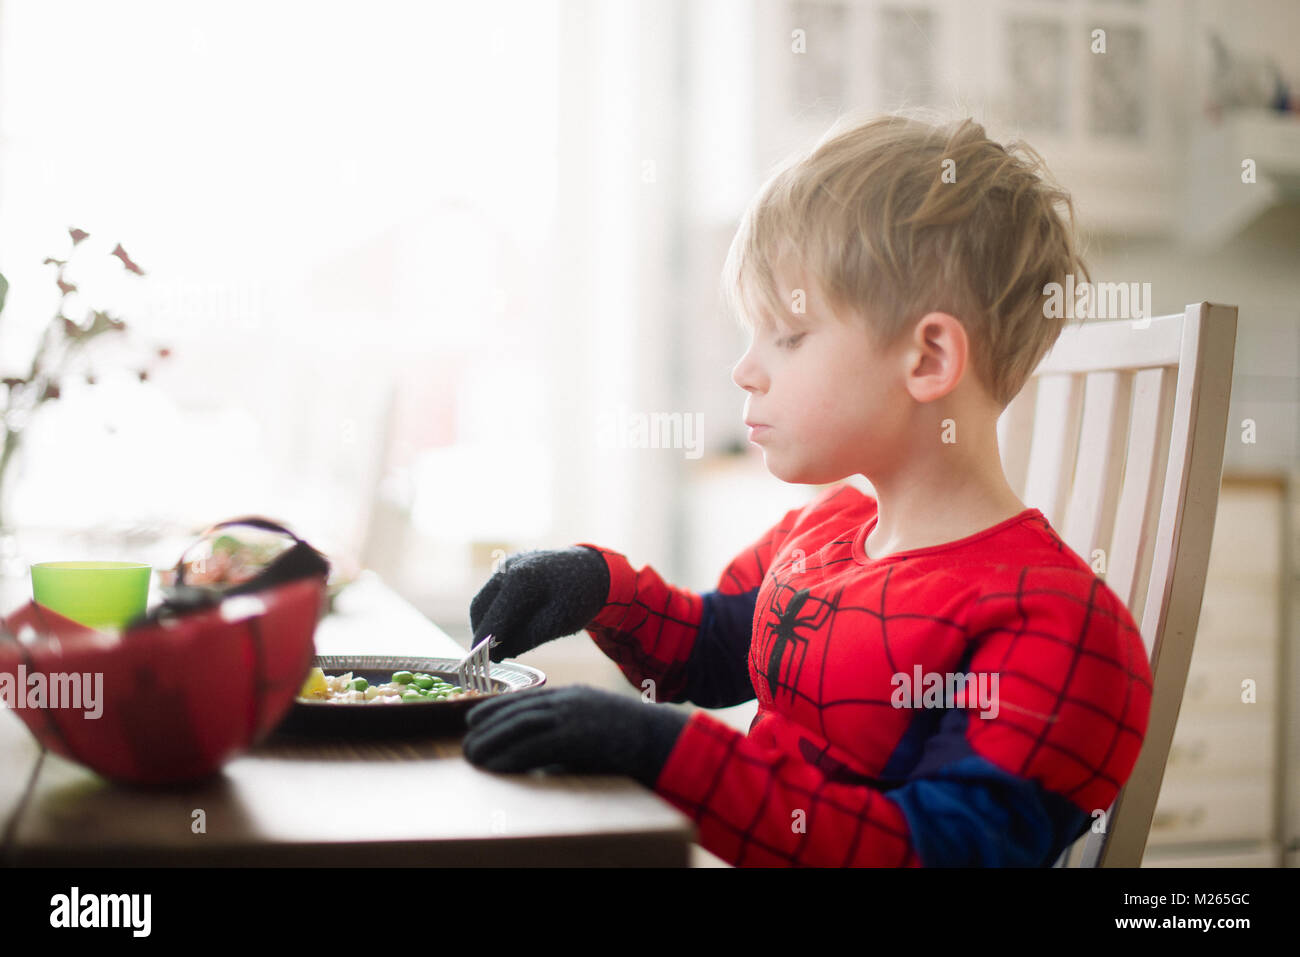 Garçon scandinave de manger son déjeuner dans un costume de spider man. Banque D'Images